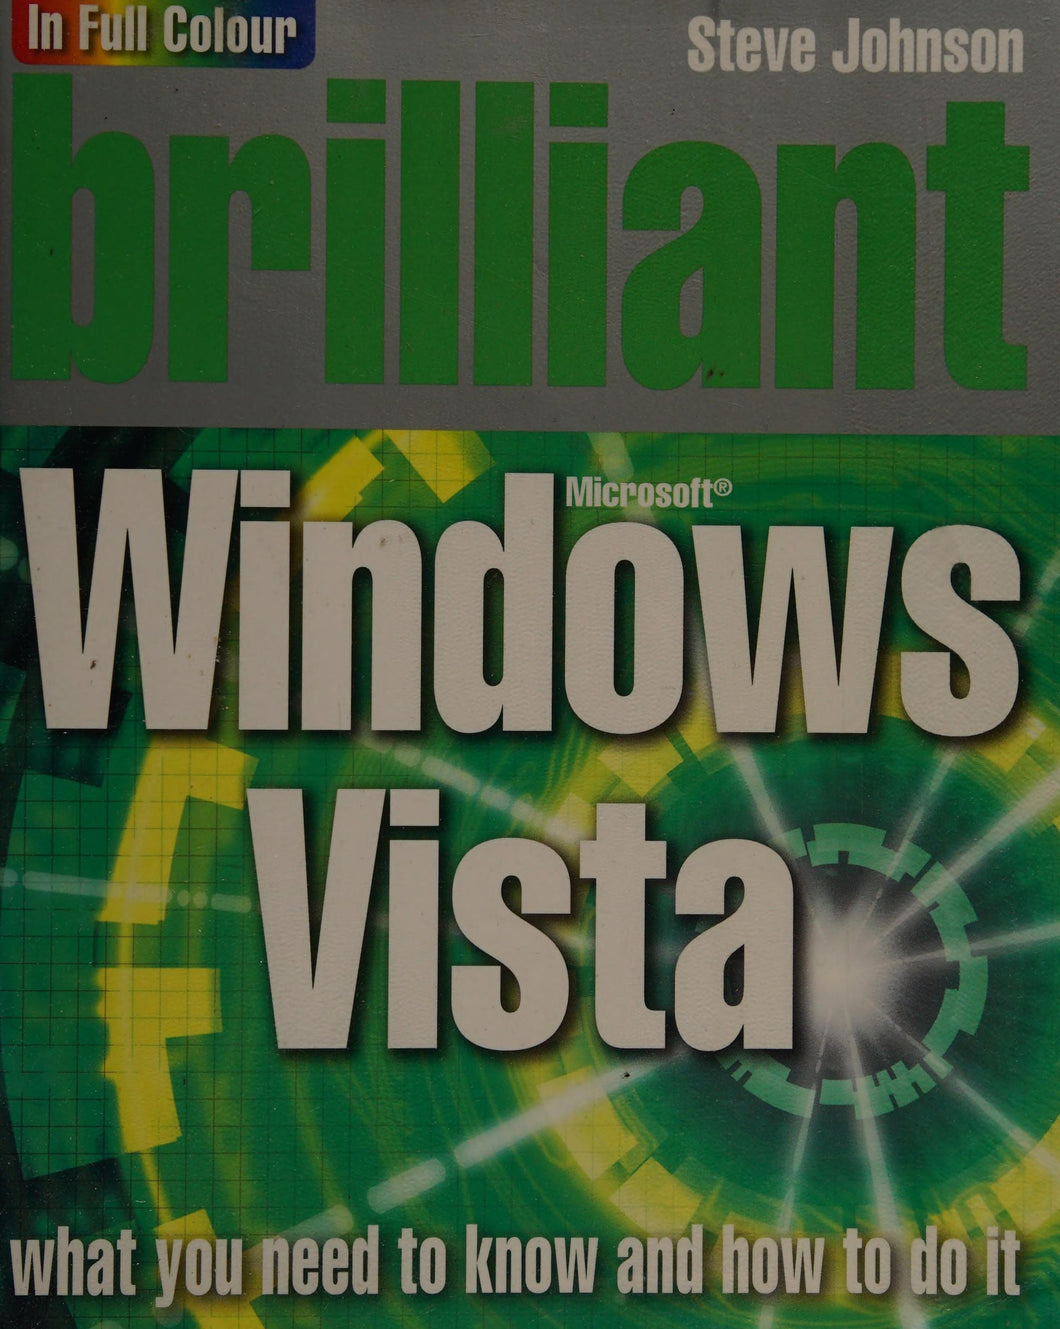 Brilliant Windows Vista